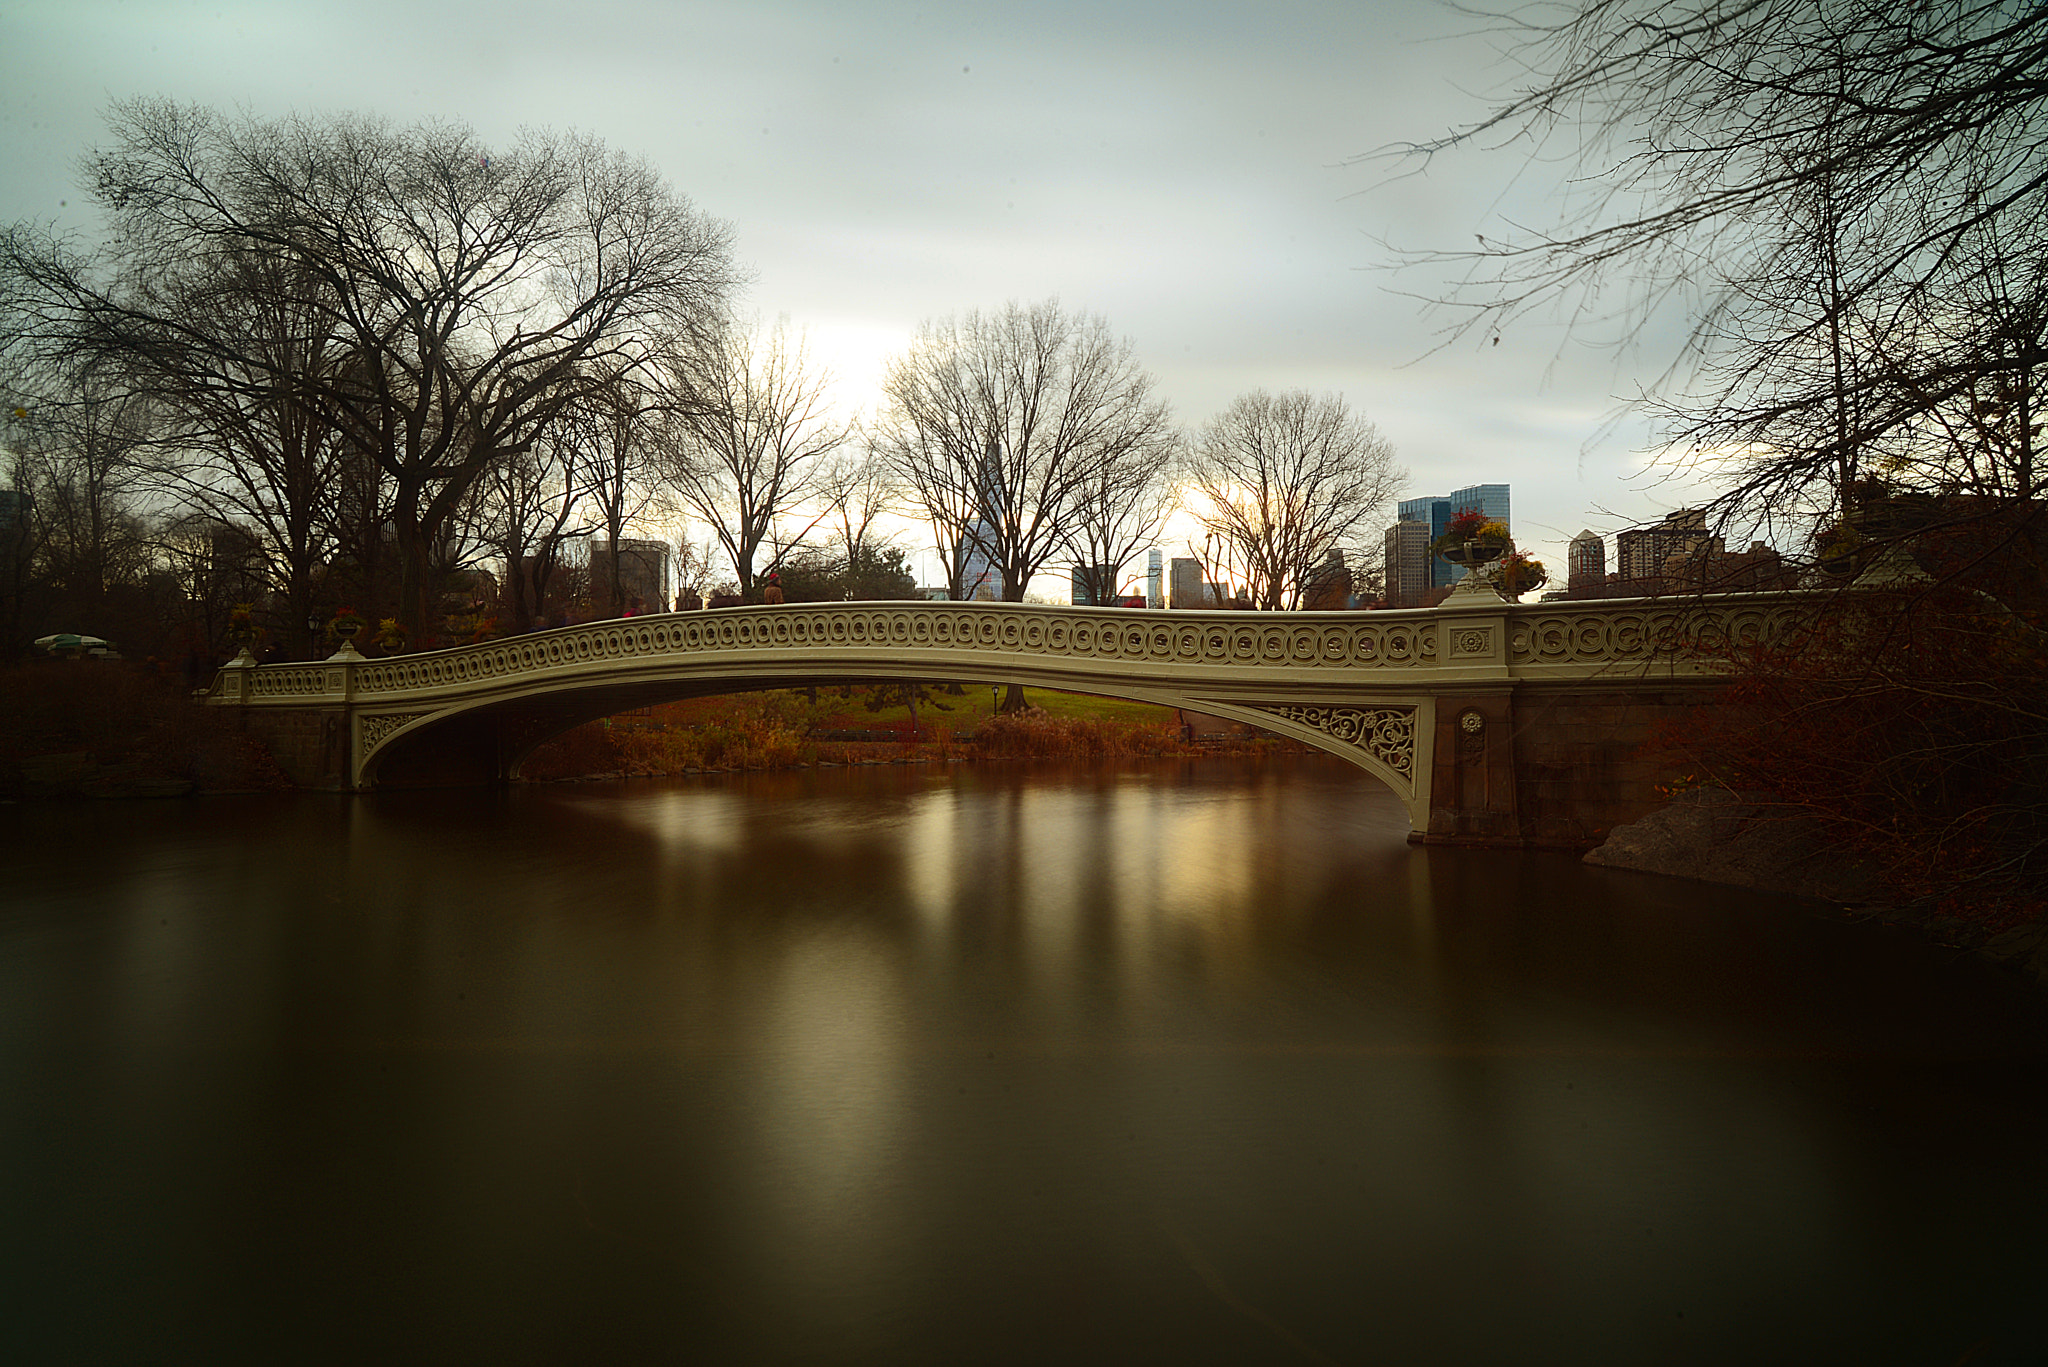 Nikon D600 + AF Zoom-Nikkor 28-70mm f/3.5-4.5D sample photo. Bow bridge, central park new york photography